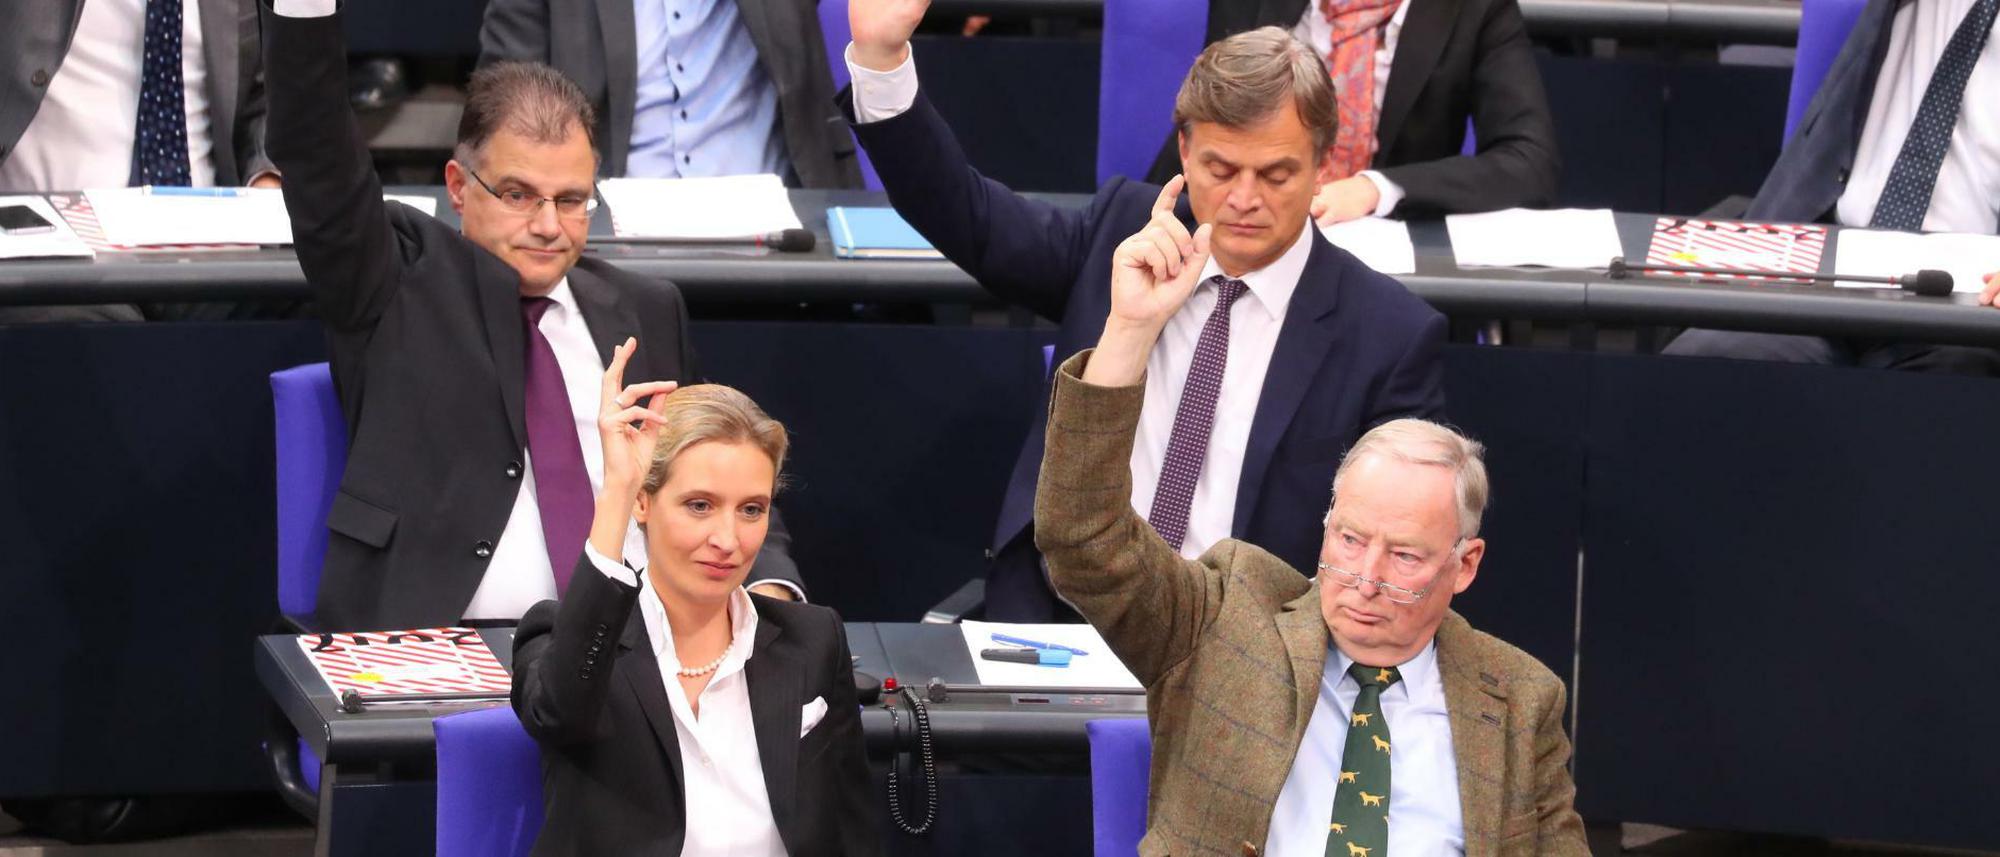 Rechtspopulisten im Bundestag: die AfD die anderen Parteien vorführen will